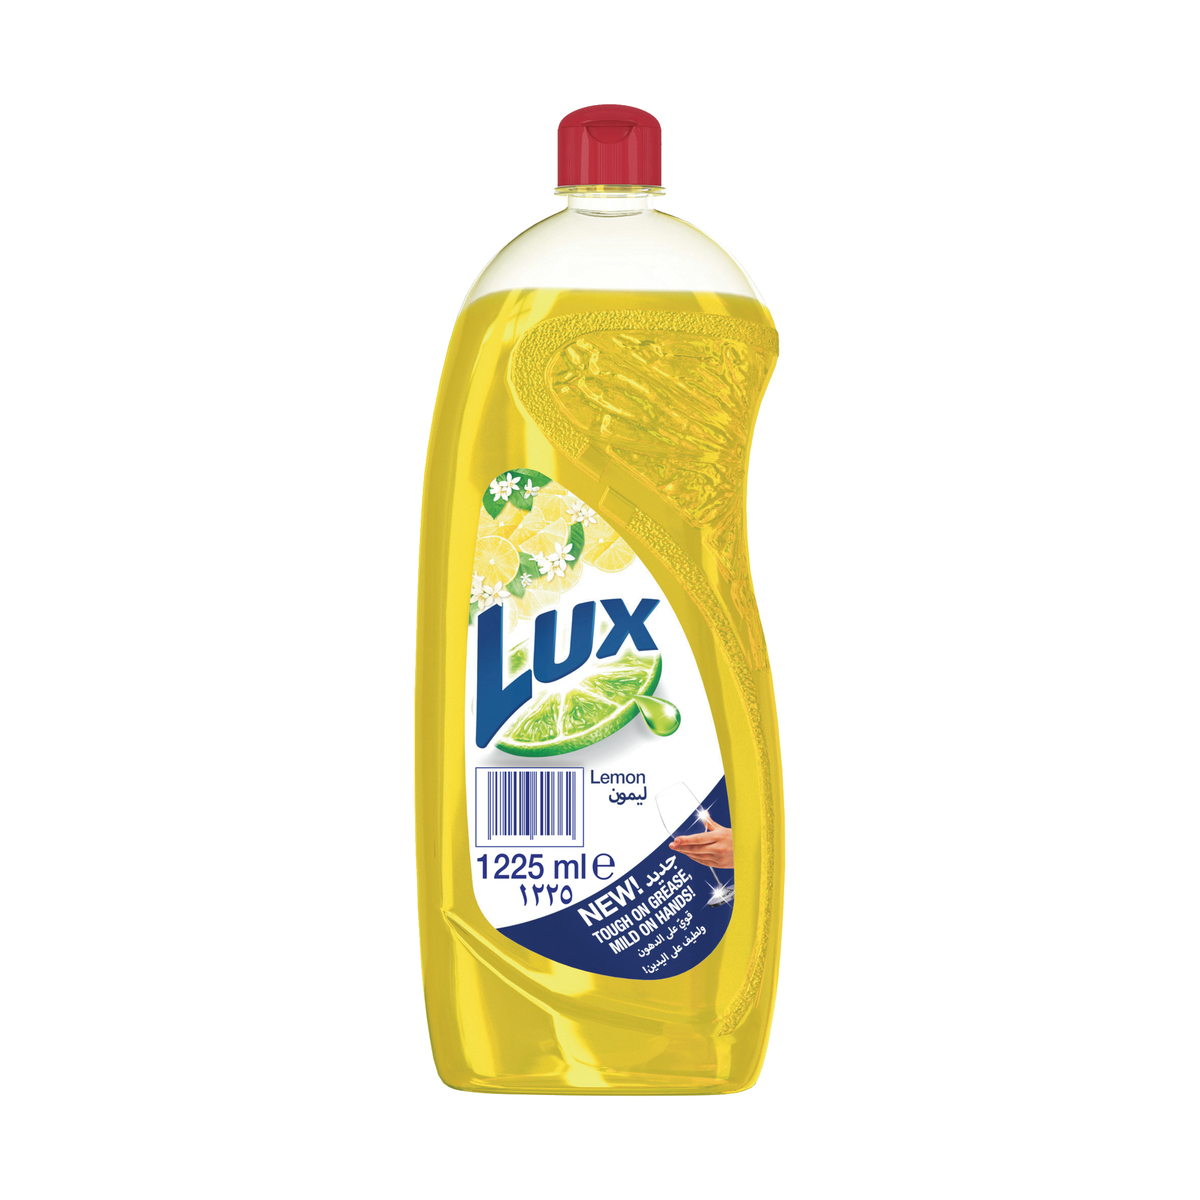 Buy Lux Lemon Dishwashing Liquid Value Pack 1225 ml Online at Best Price | Washing Up | Lulu UAE in UAE